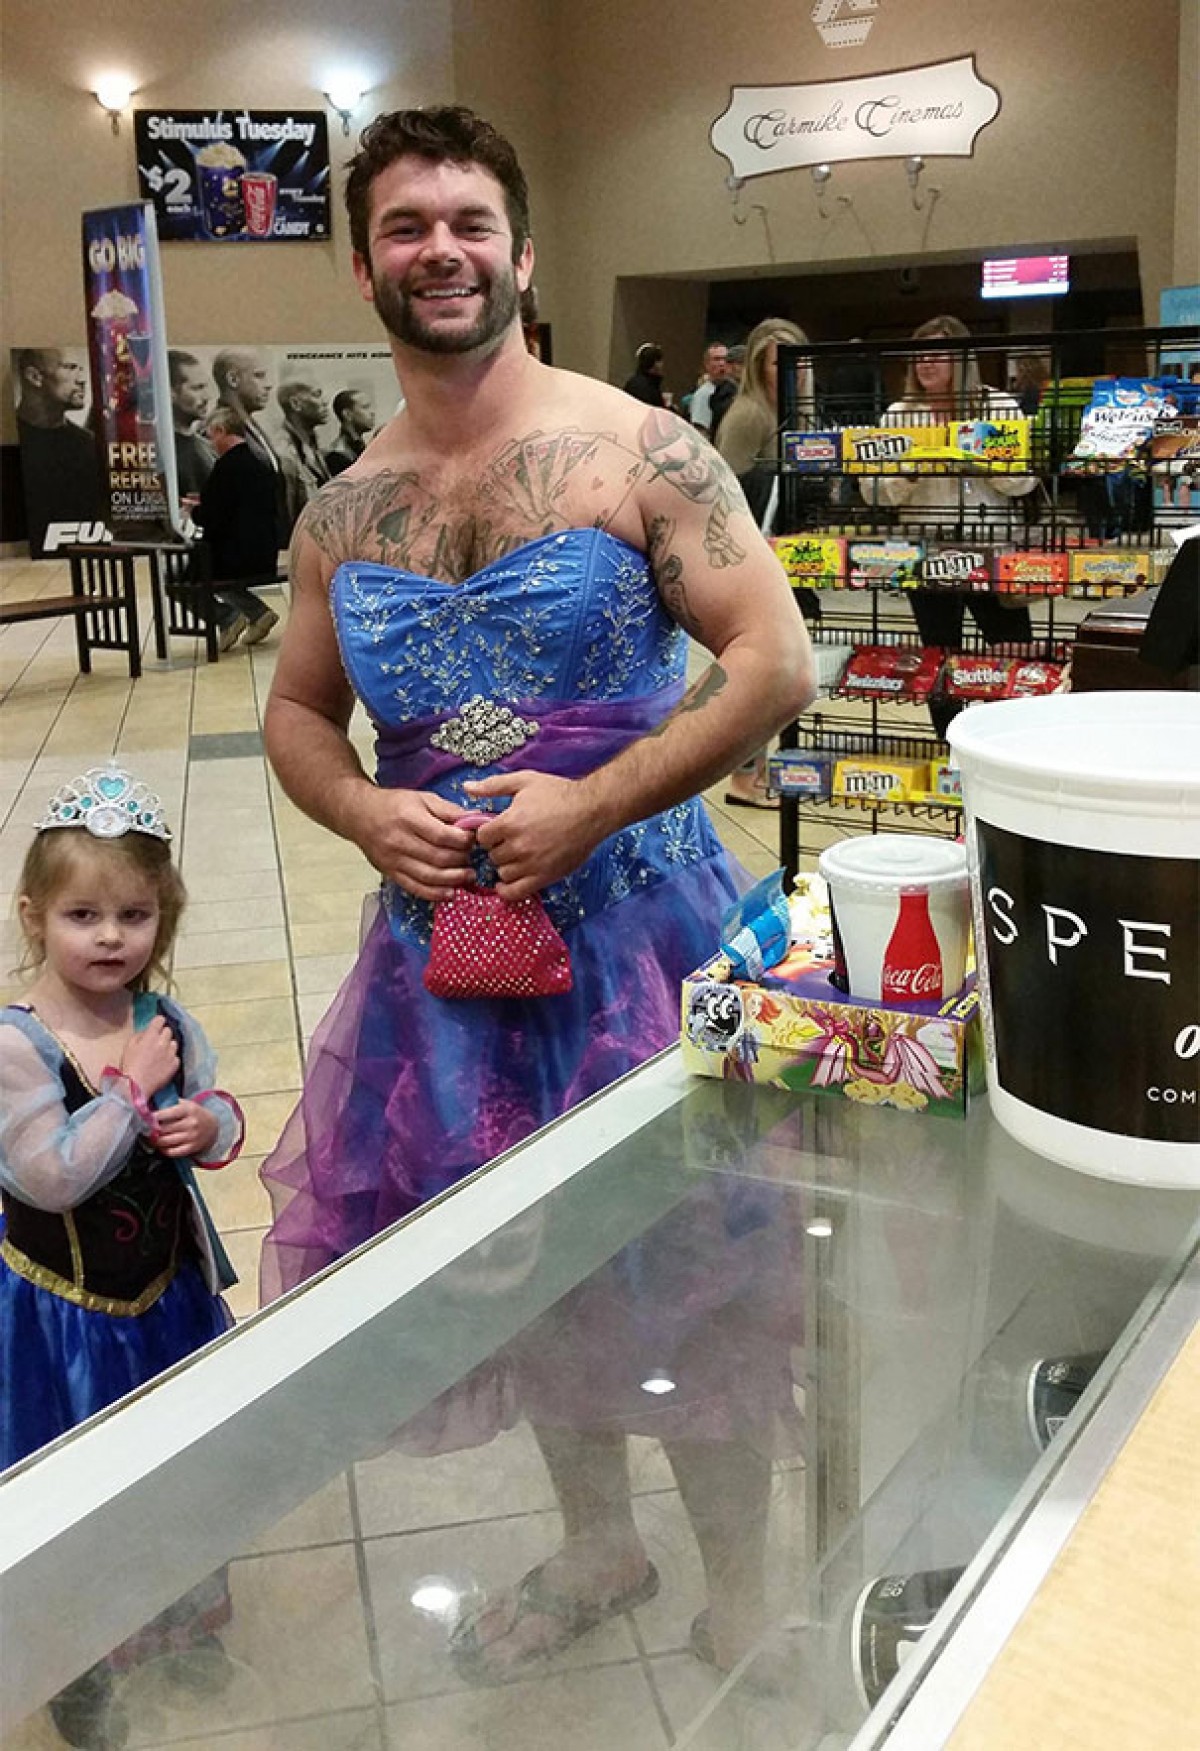 Ντρεπόταν να ντυθεί πριγκίπισσα για να πάει σινεμά κι έτσι ντύθηκε κι ο θείος της